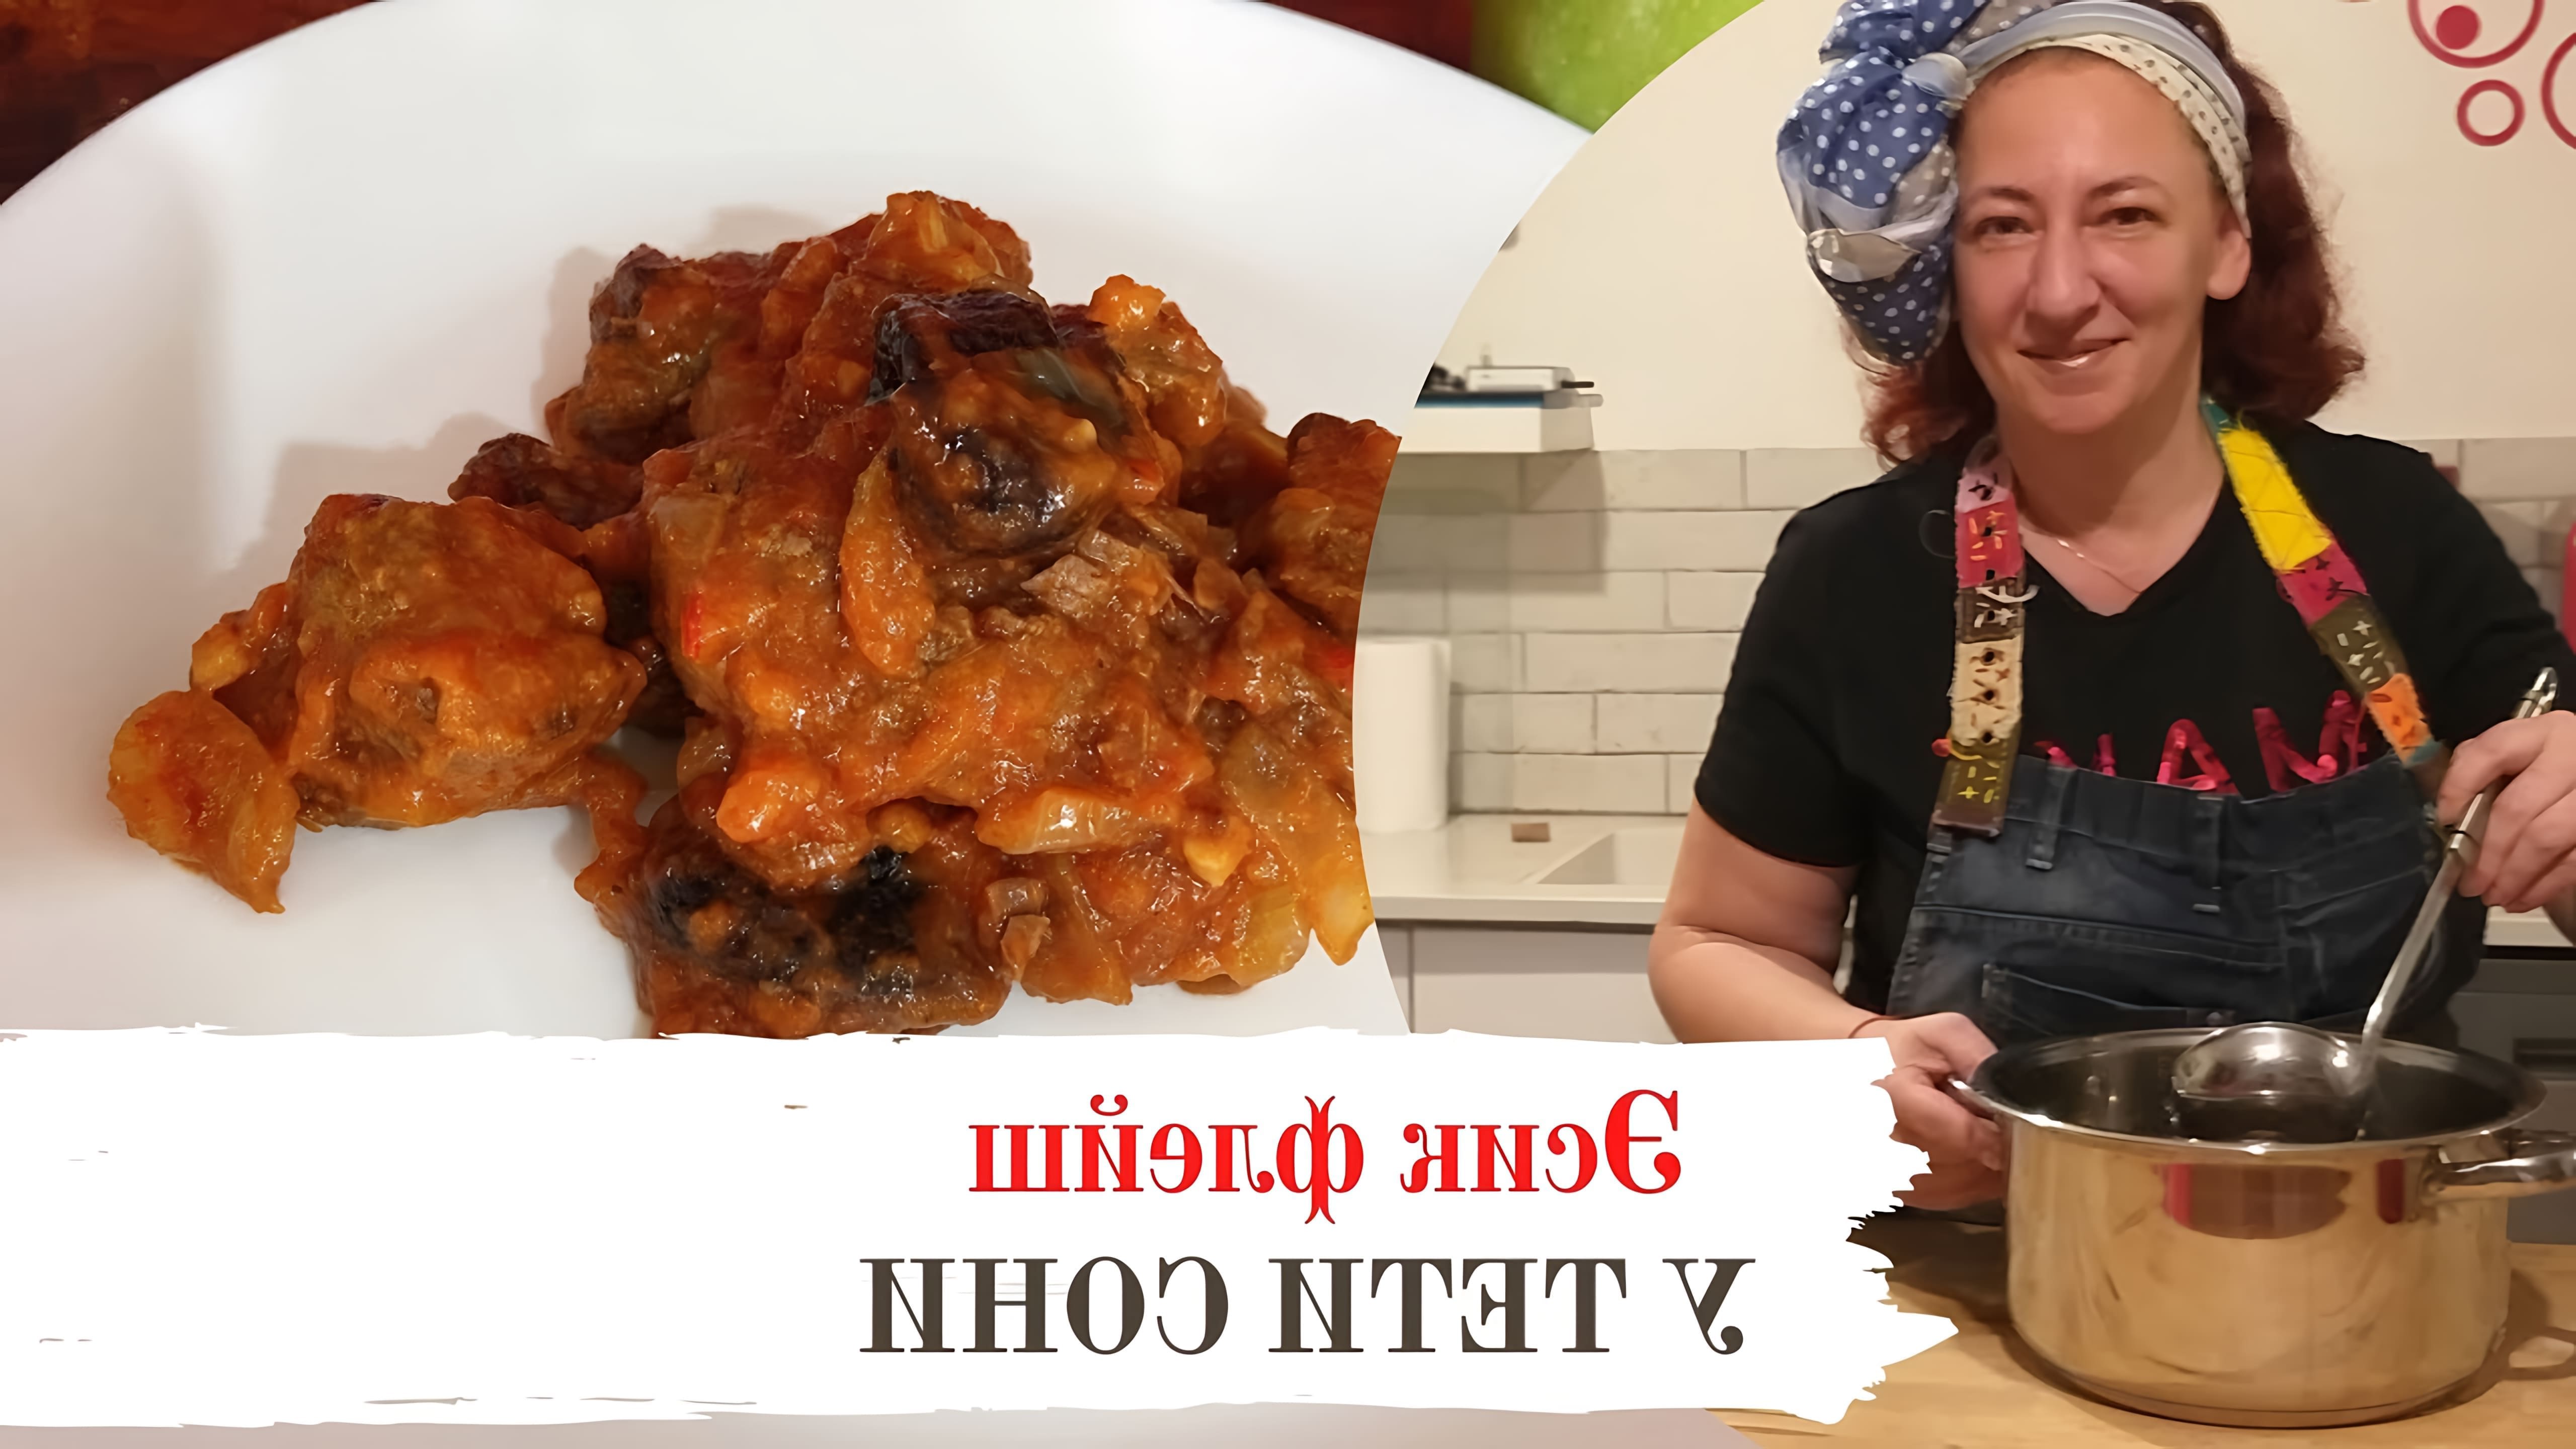 В этом видео демонстрируется процесс приготовления традиционного еврейского блюда "Эсик Флейш" (Мясо по-еврейски) к празднику Рош Ха-Шана